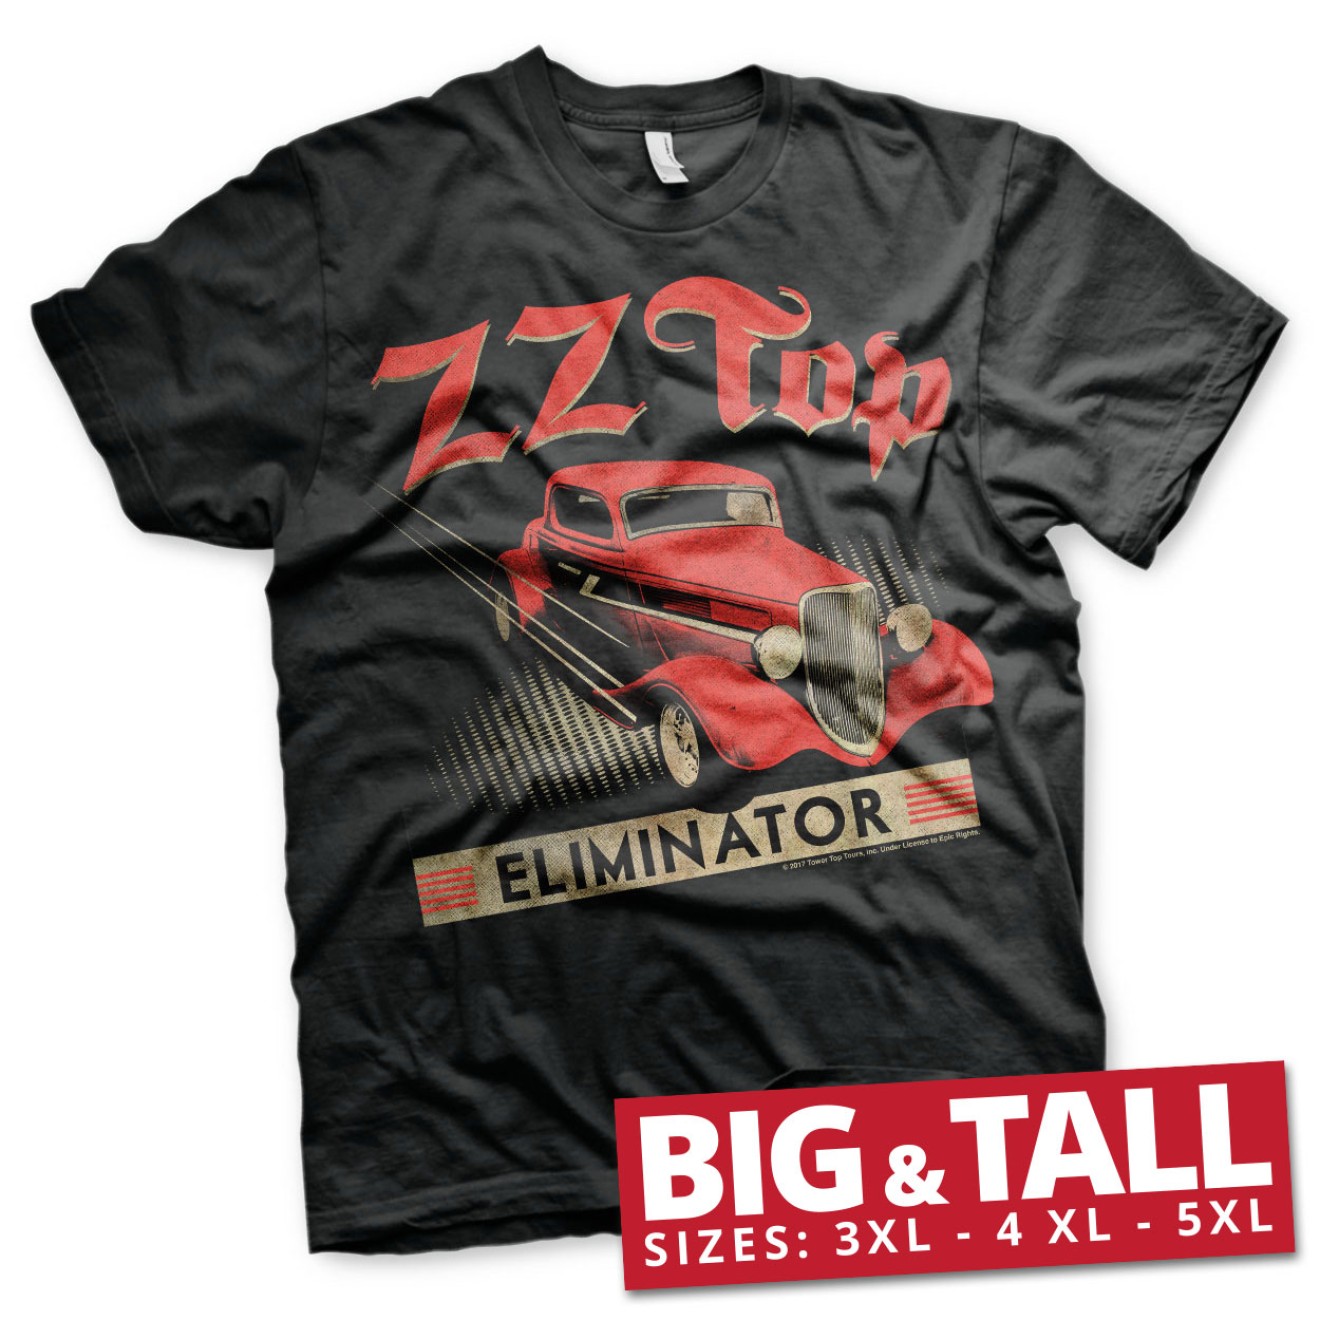 ZZ-Top Eliminator Big & Tall T-Shirt Große Größen